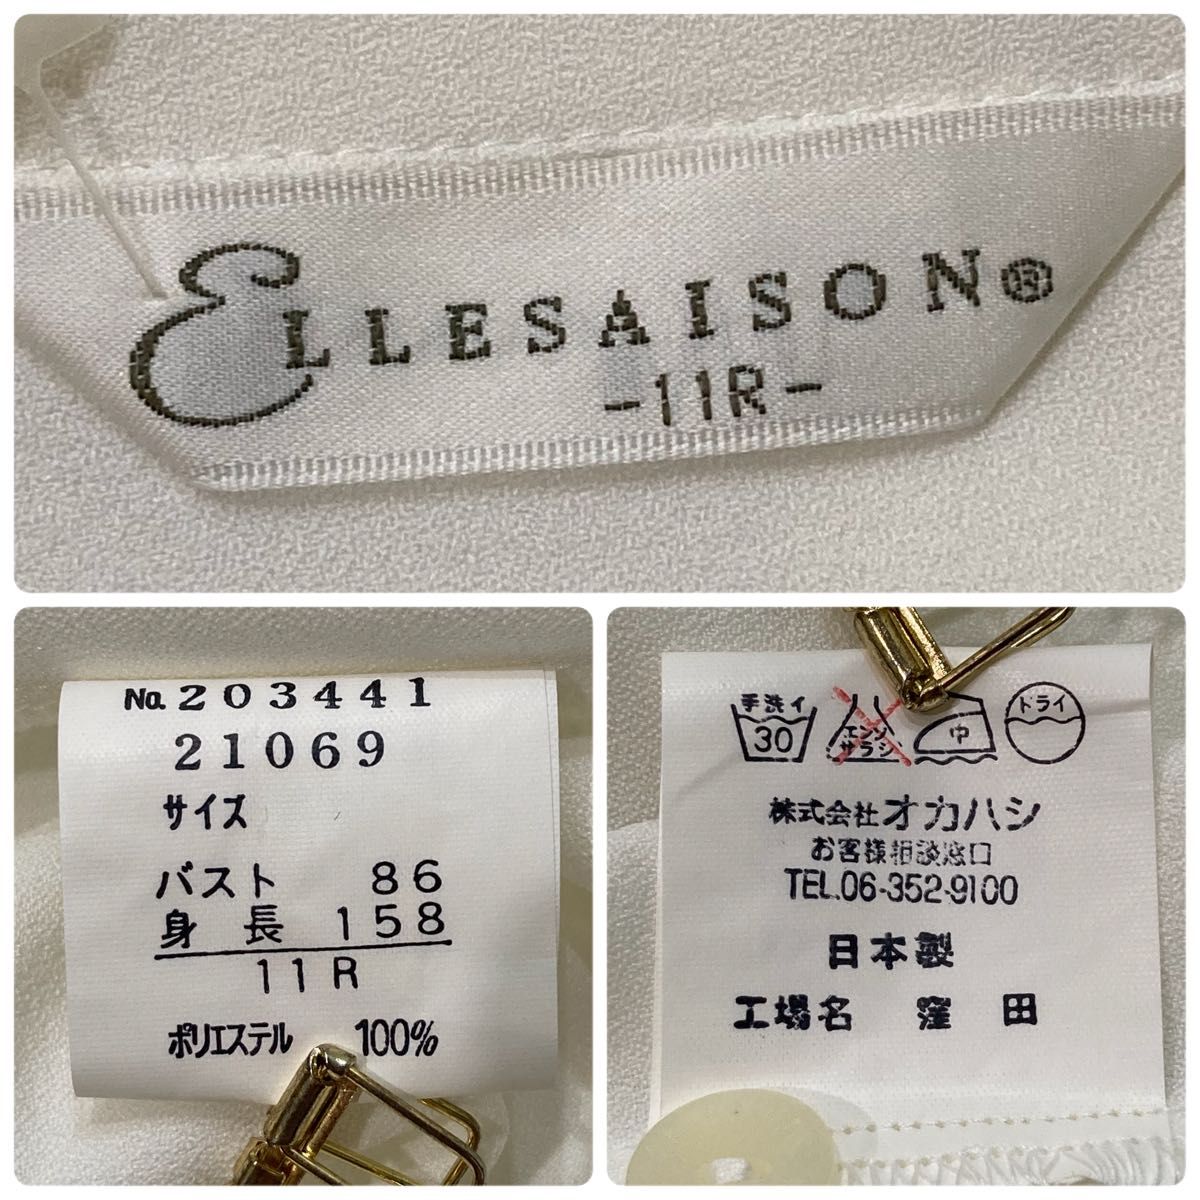 美品 ELLESAISON オープンカラー 長袖 シャツ ブラウス 装飾 ホワイト オシャレ 11R